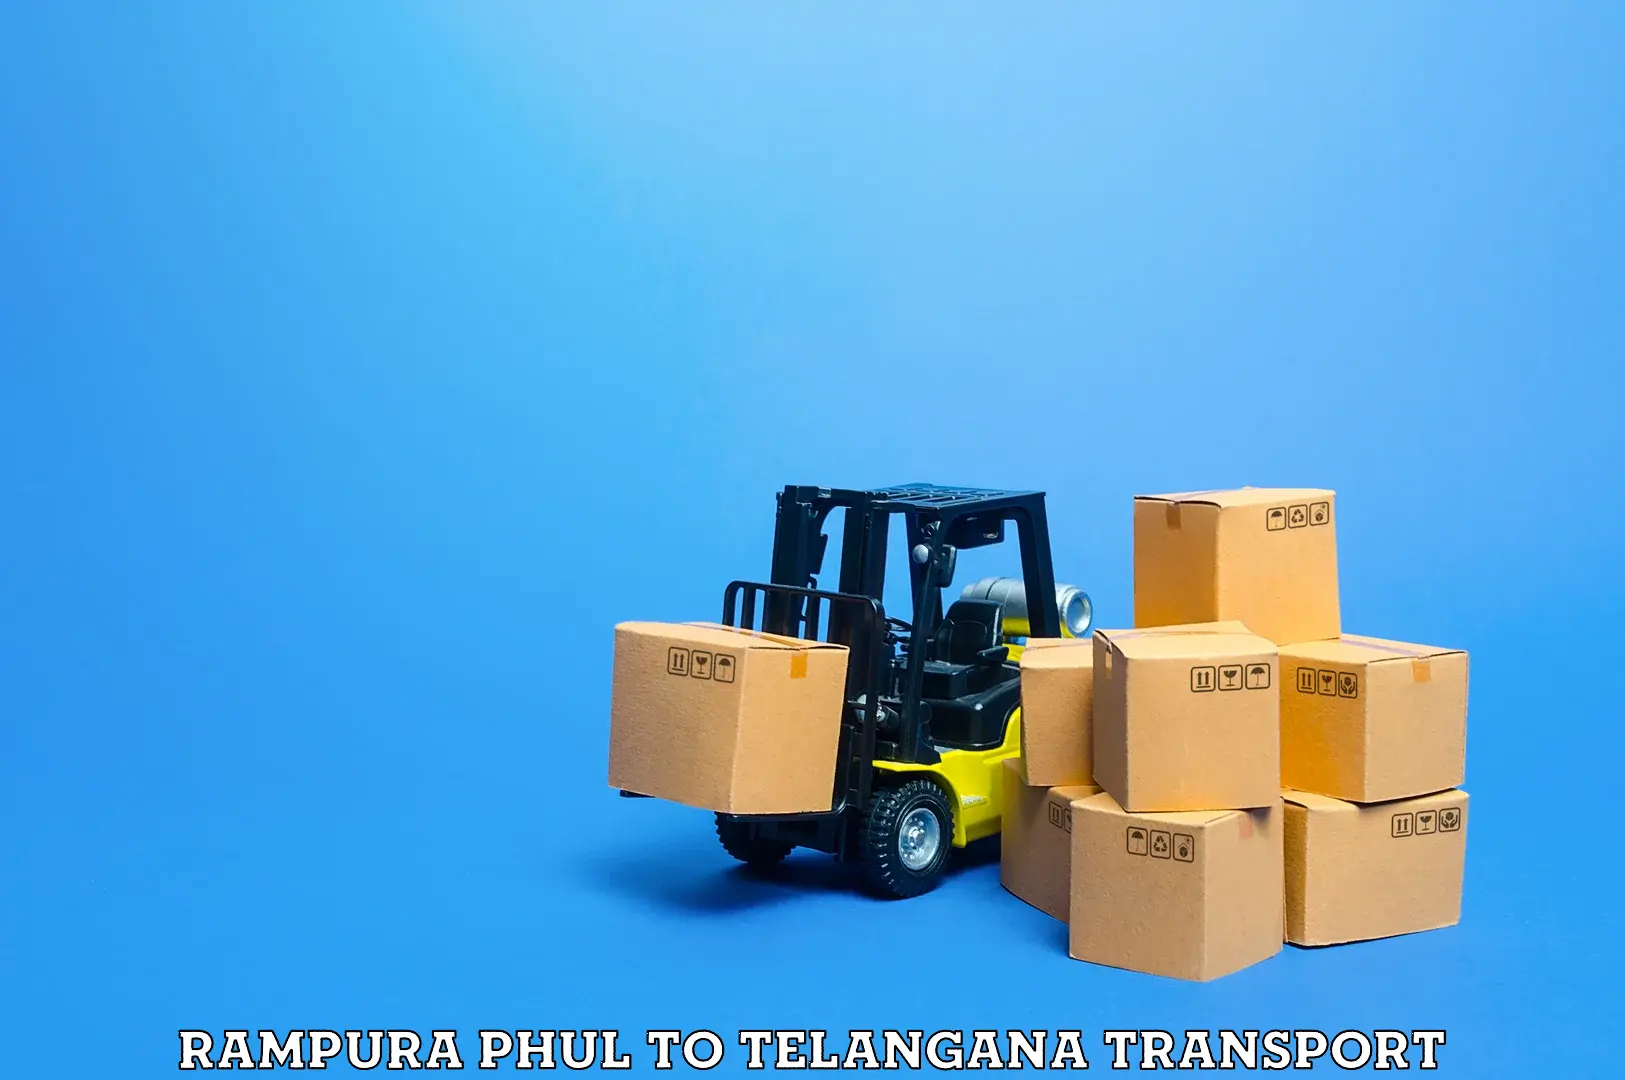 Nearest transport service Rampura Phul to Yellandu